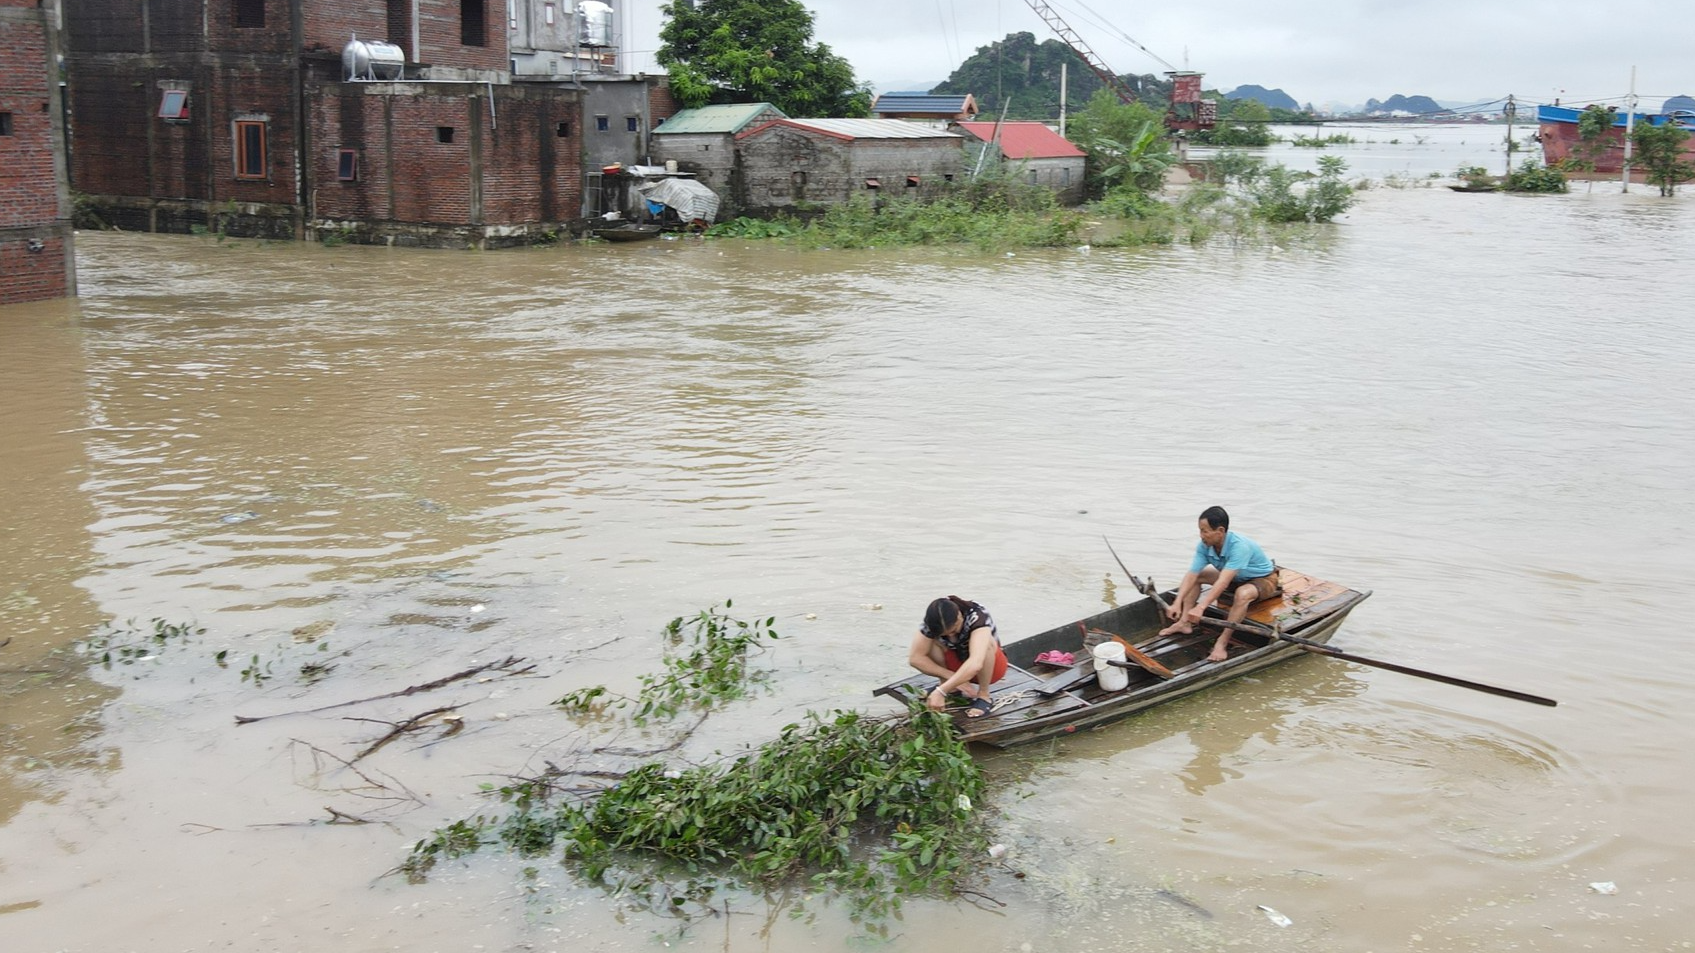 Nước sông Hoàng Long dâng cao gây ngập hàng trăm nhà dân - Ảnh 3.